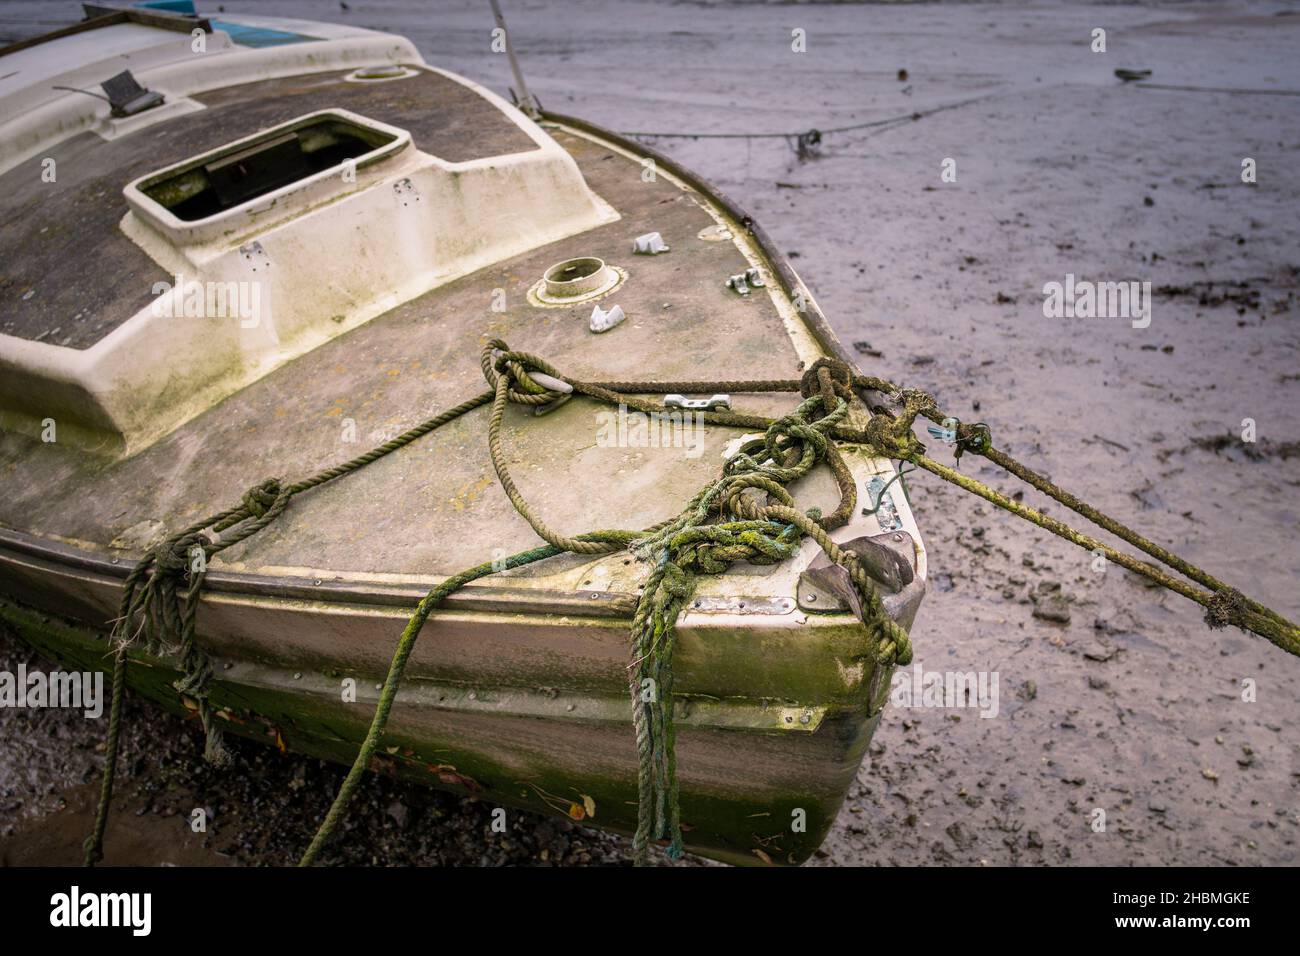 Am Ufer des Gannel River in Newquay in Cornwall wurden die Überreste eines alten Segelbootes, das auf Reparatur wartet, zusammengebunden. Stockfoto